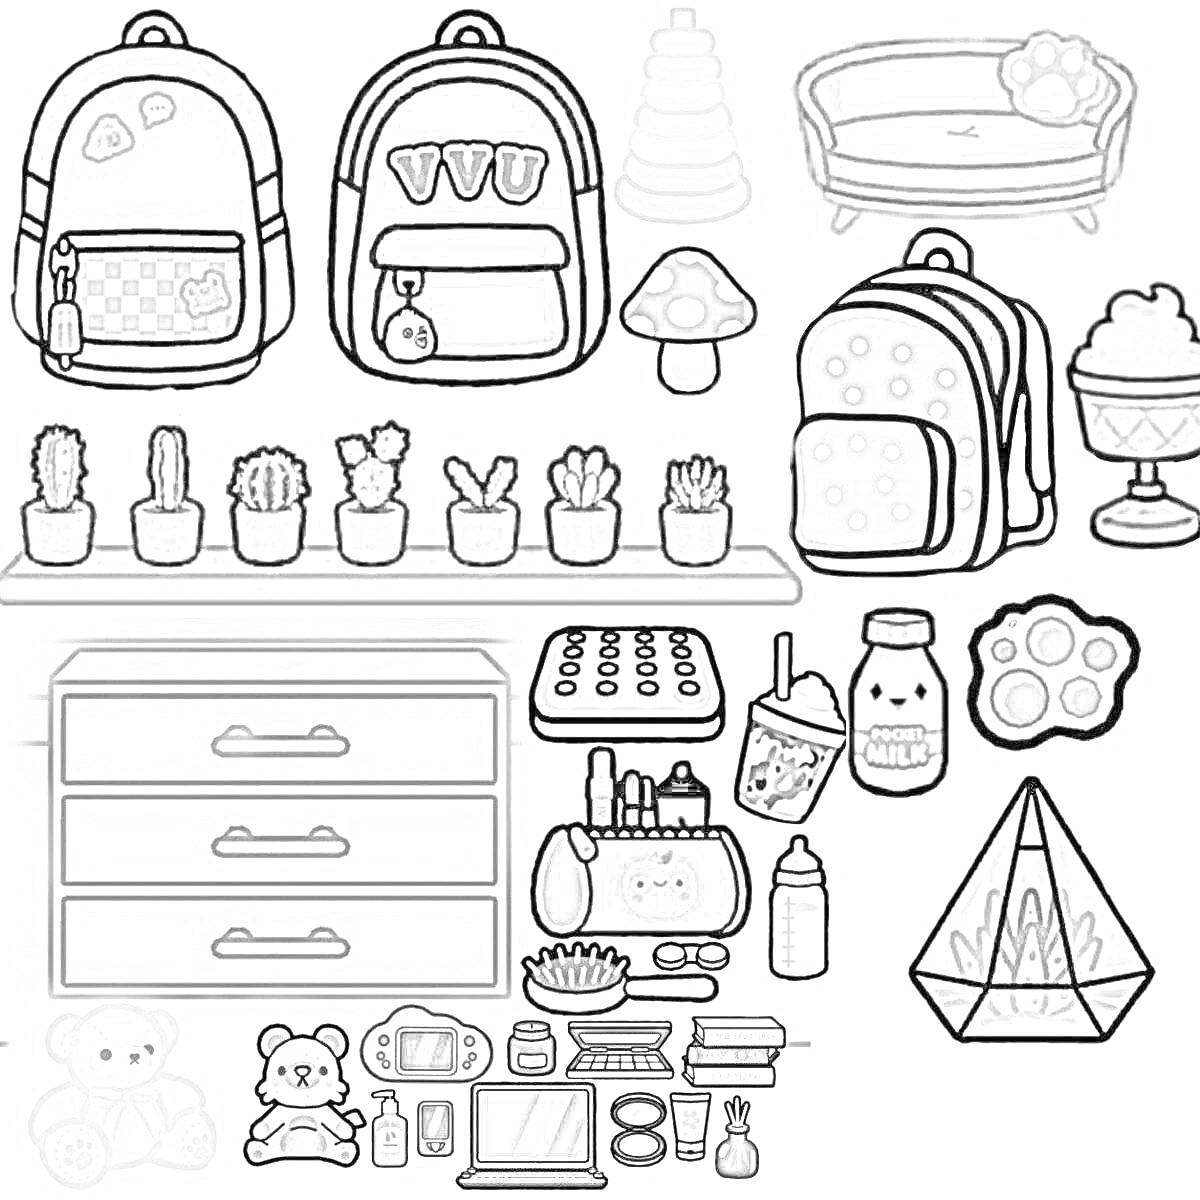 Школьные рюкзаки, кактусы в горшках, мебель и предметы интерьера